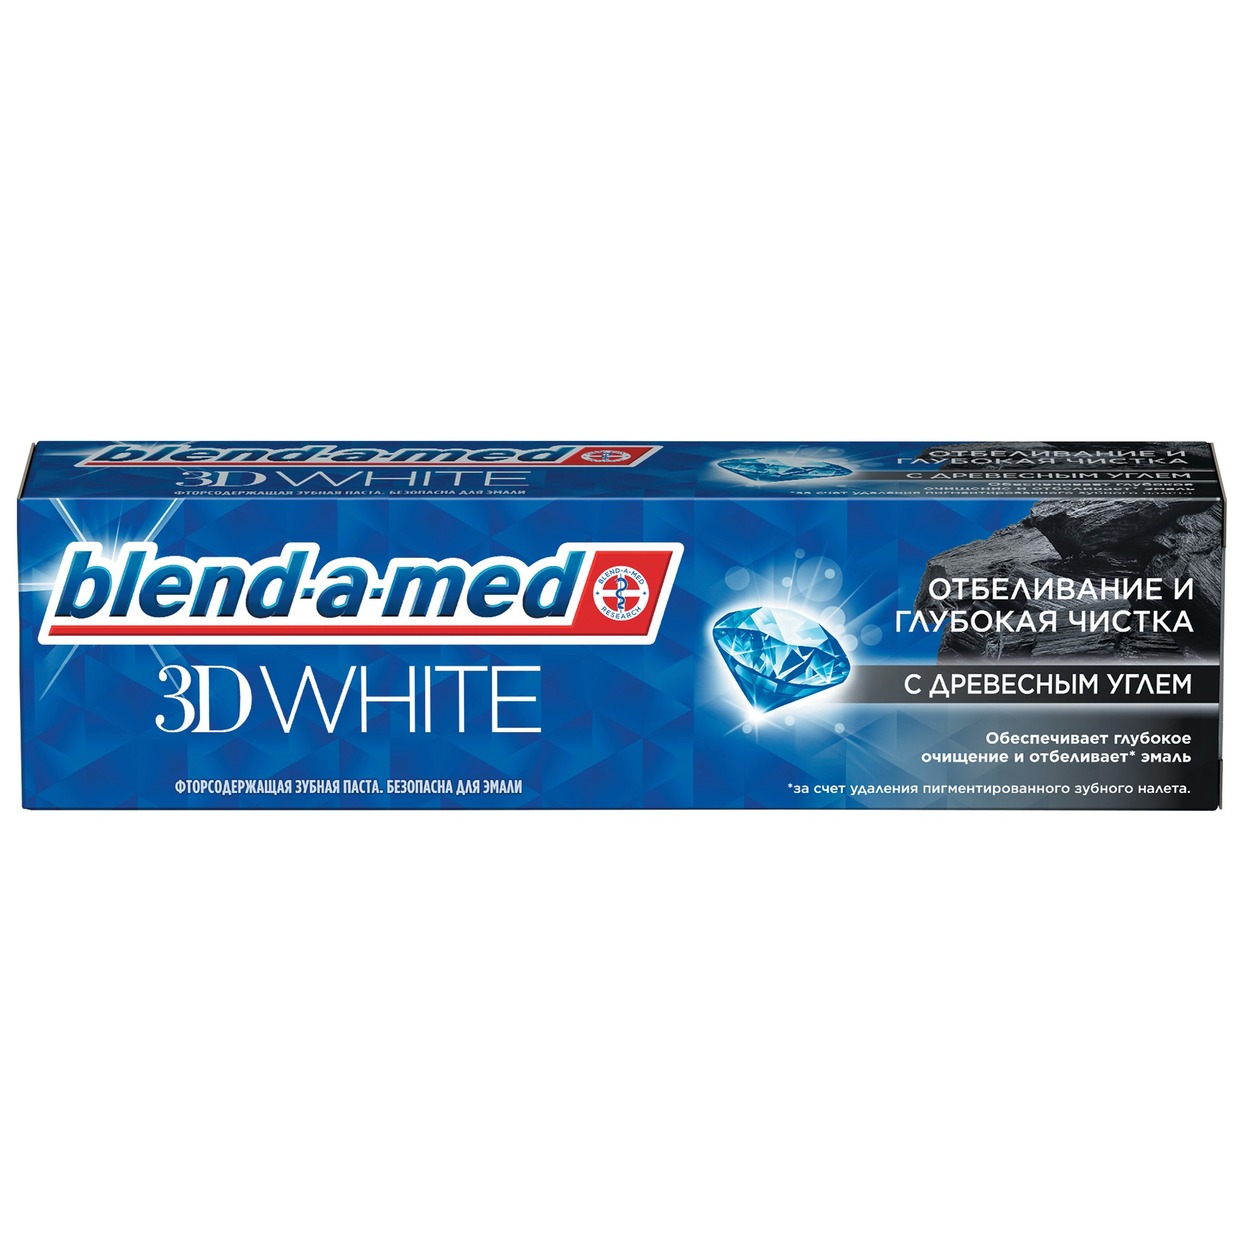 BLEND-A-MED Зубная паста 3DW Отбеливание и глубокая чистка Древесным углем 100мл по акции в Пятерочке